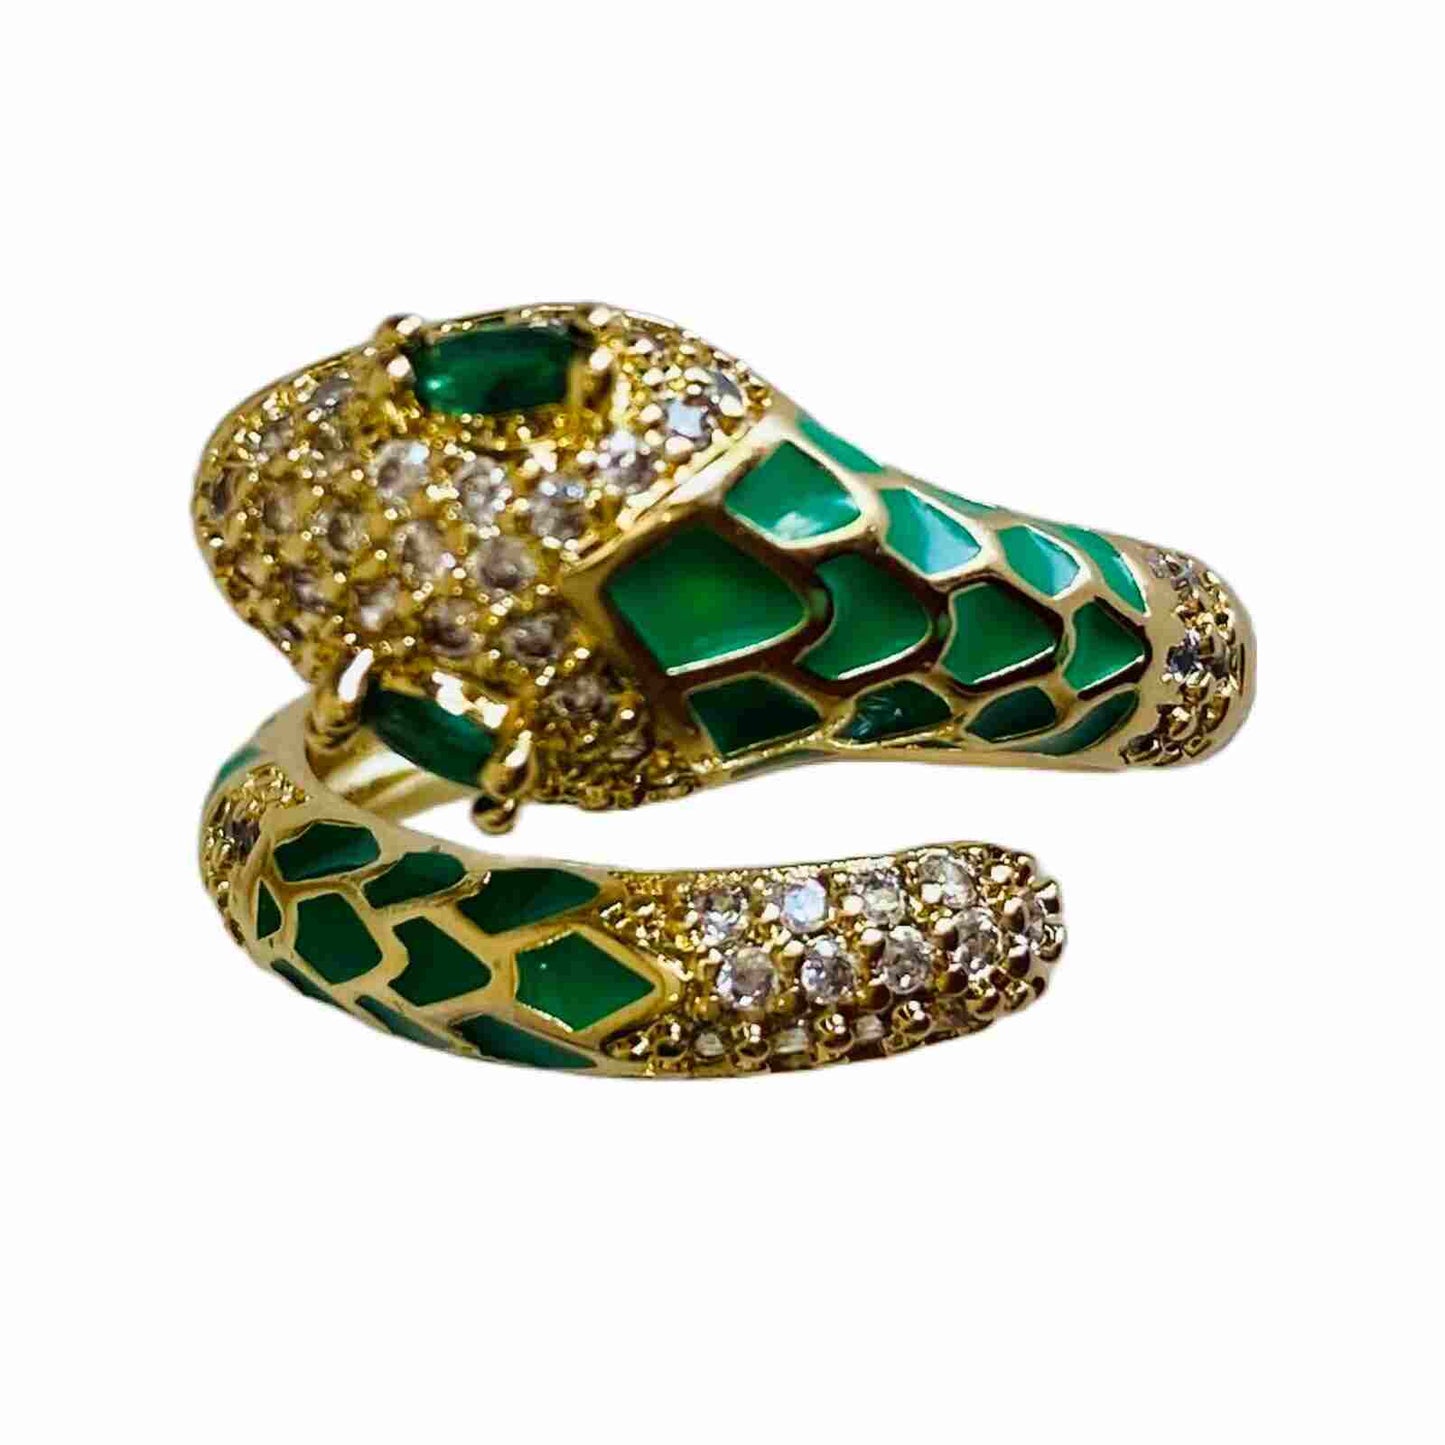 Serpent Ring | Green Snake Ring | Buy Snake Ring Online | Snake Jewellery